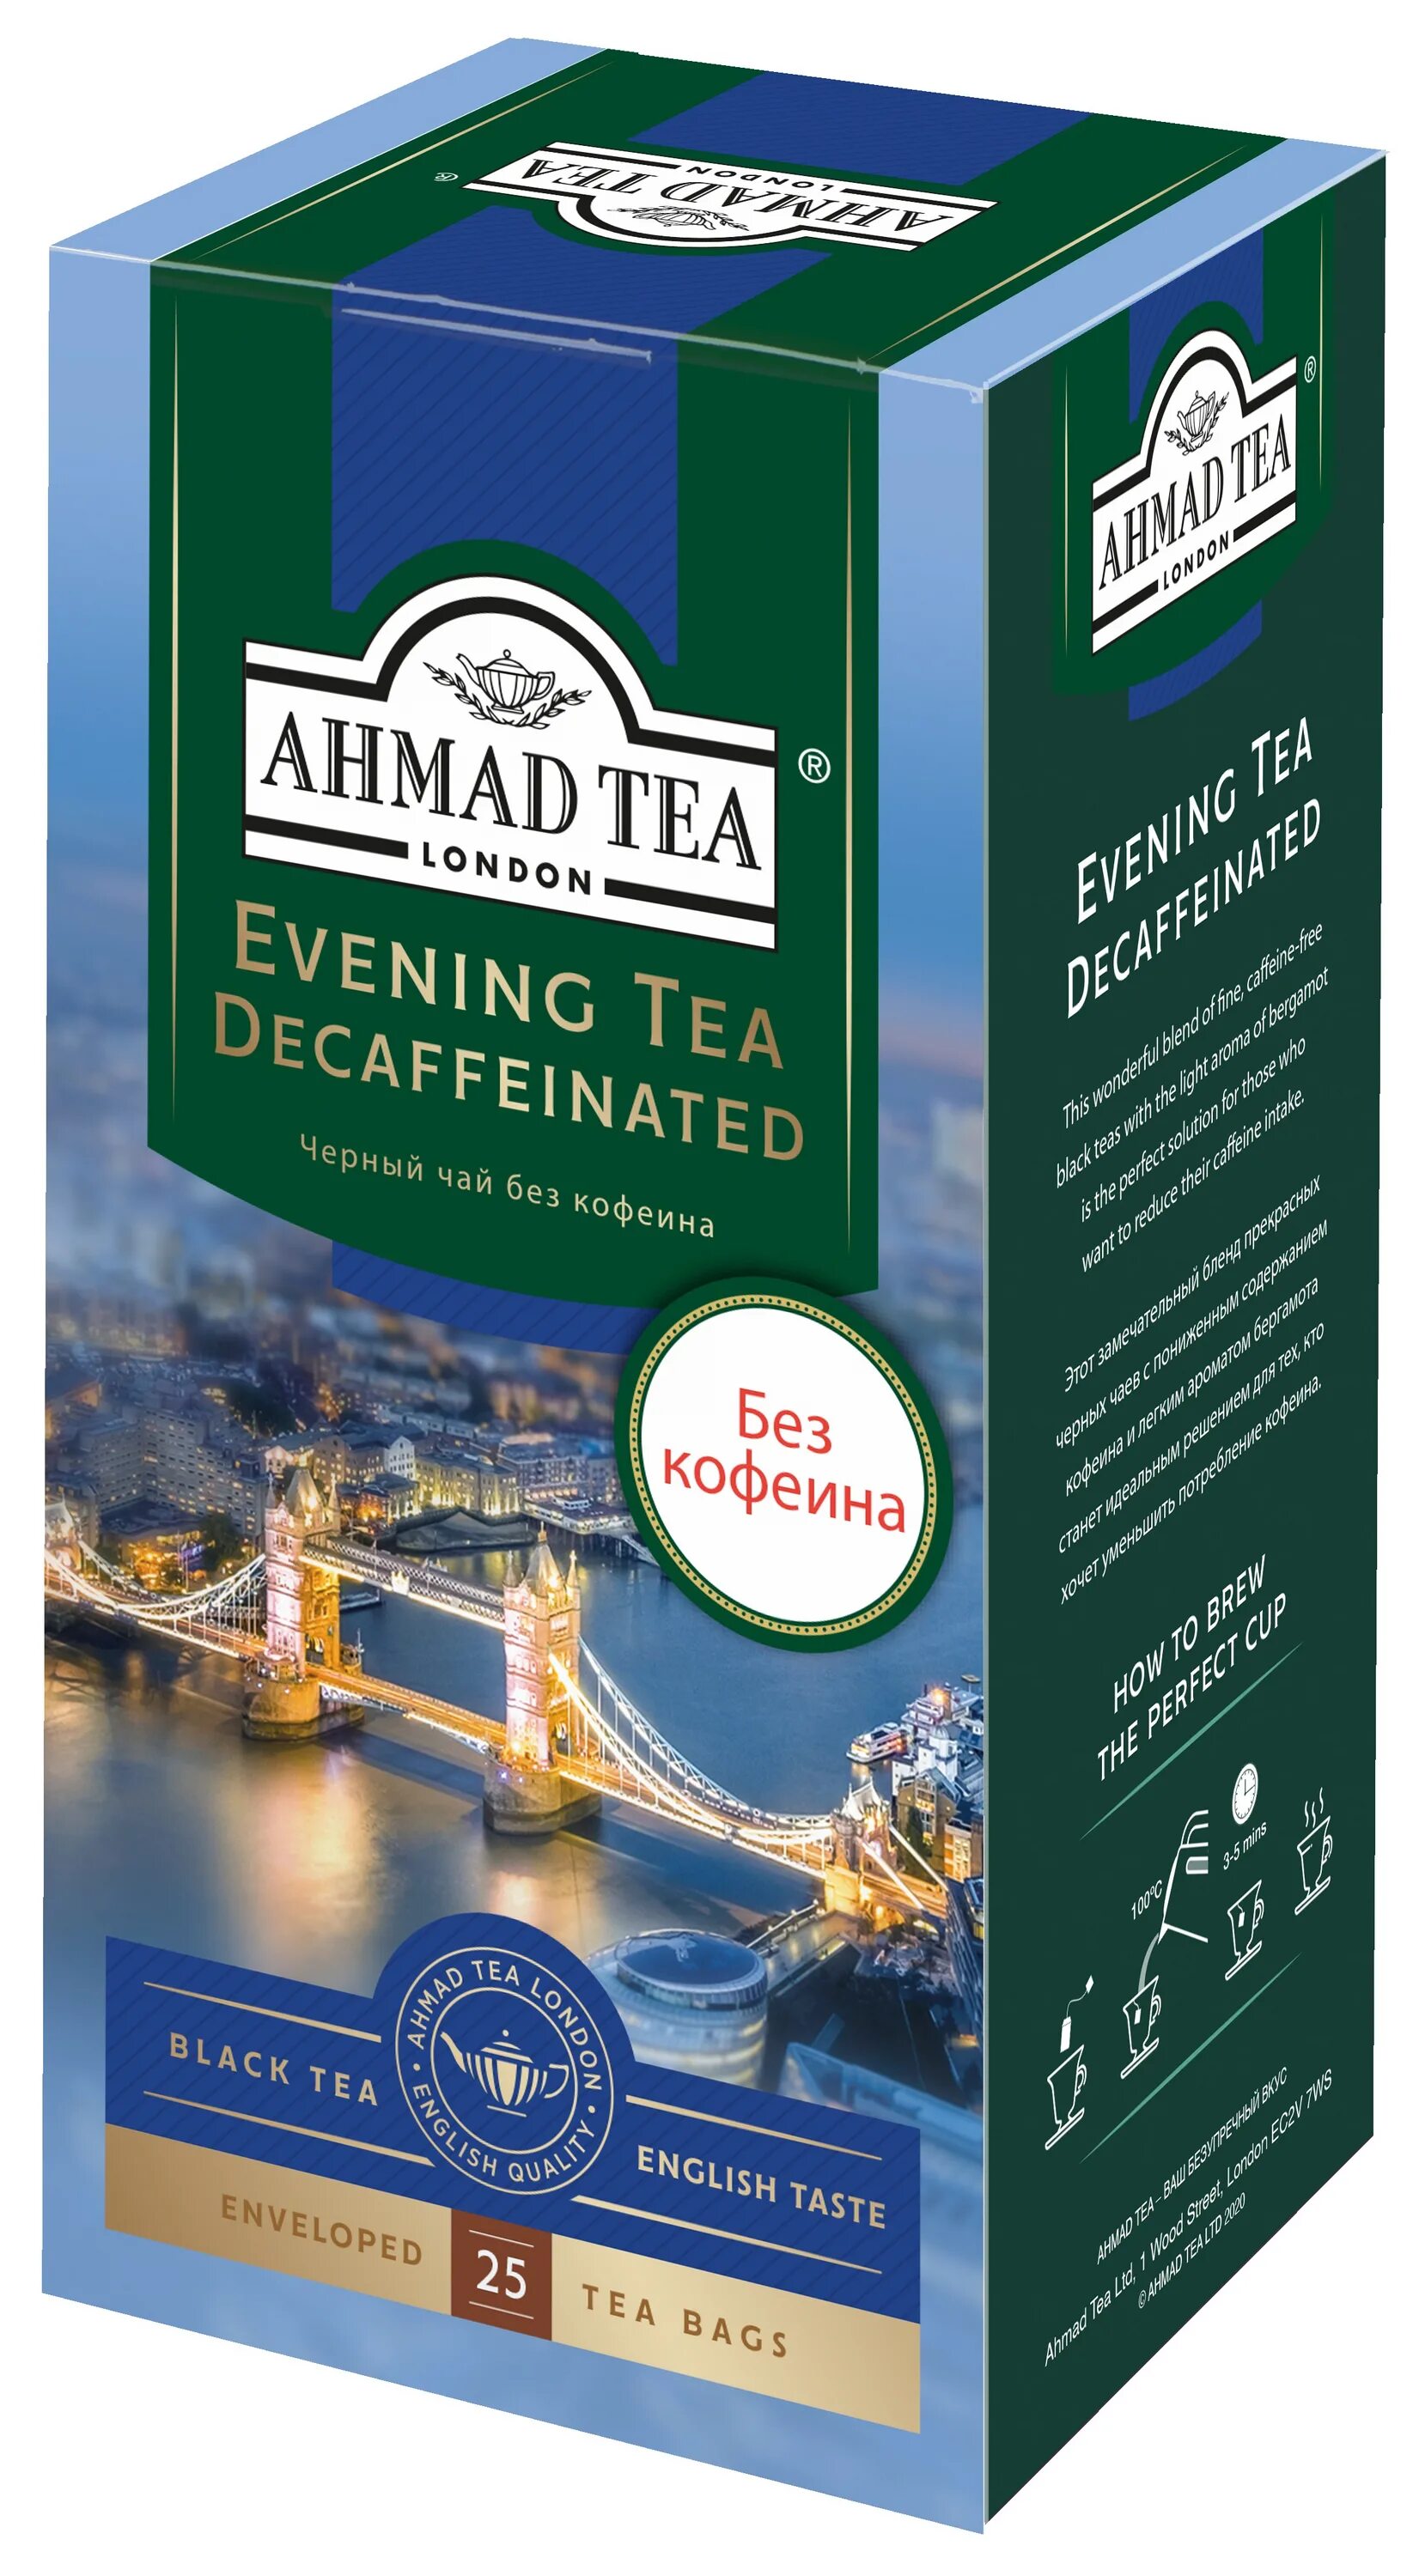 Чай вечерний купить. Чай Ахмат Теа с бергамотом. Чай черный Ahmad Tea Evening Tea без кофеина в пакетиках. Ахмад Теа черный с бергамотом. Чай "Ahmad Tea" Вечерний чай, с ароматом бергамота, декофеинизированный,.